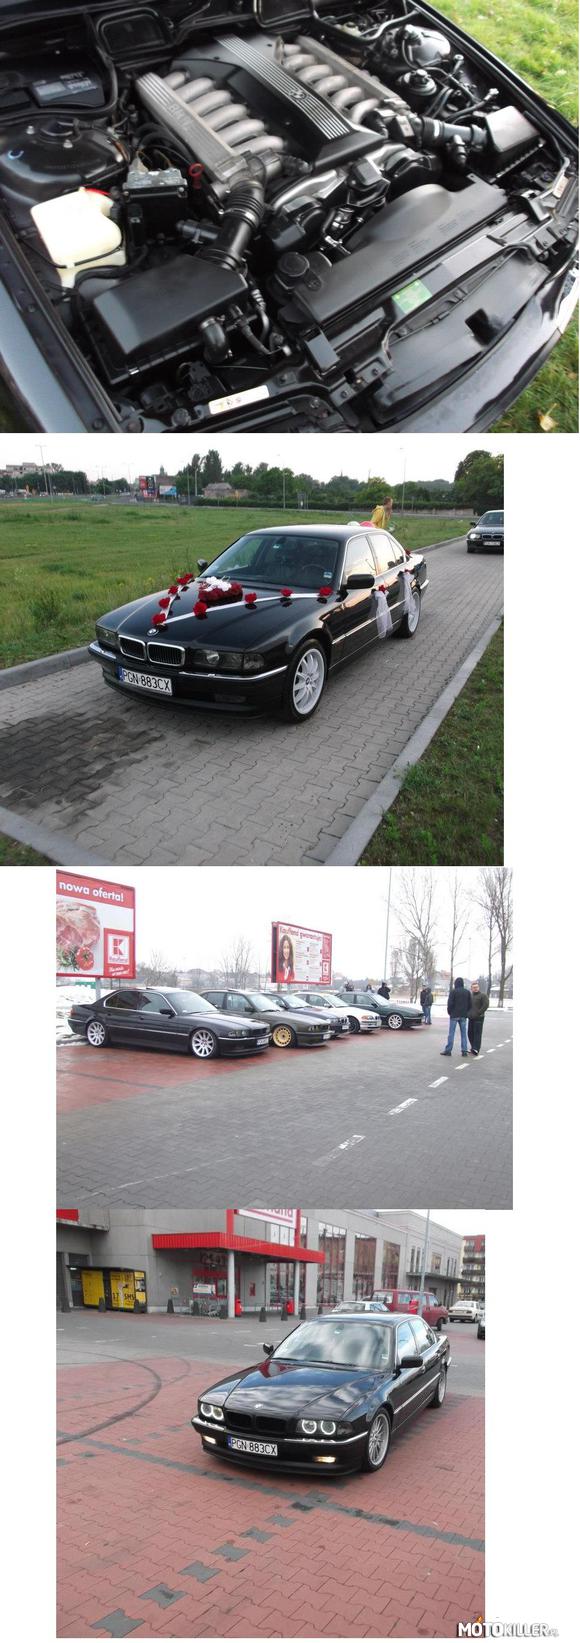 Kolejne znalezione fotki Beemki – Autko miłośnika marki BMW pochodzące z Gniezna 